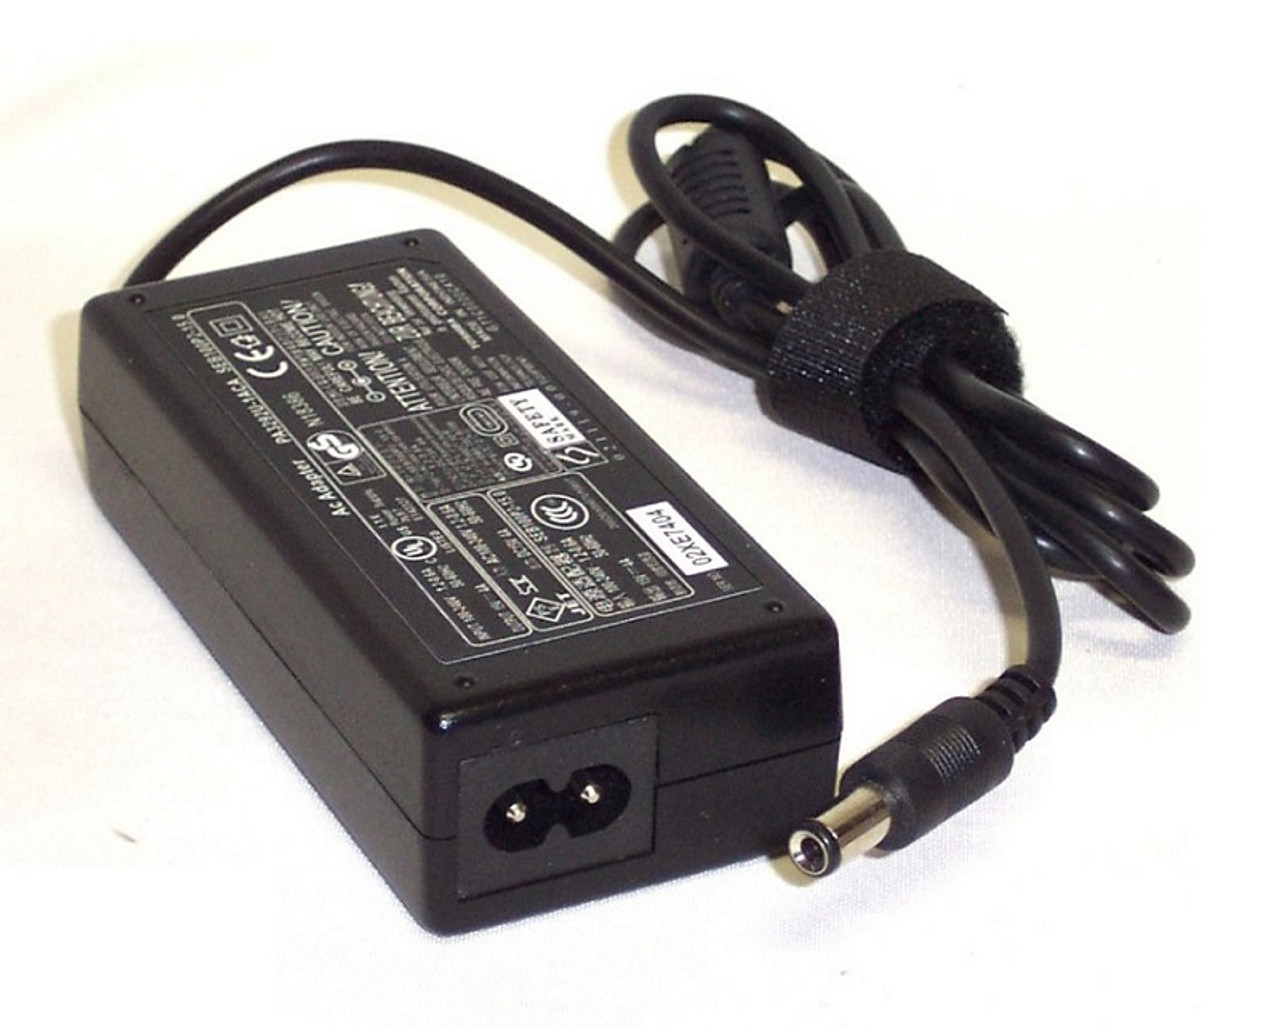 644699-003 - HP 120-Watts Smart (PFC) Slim AC Power Adapter